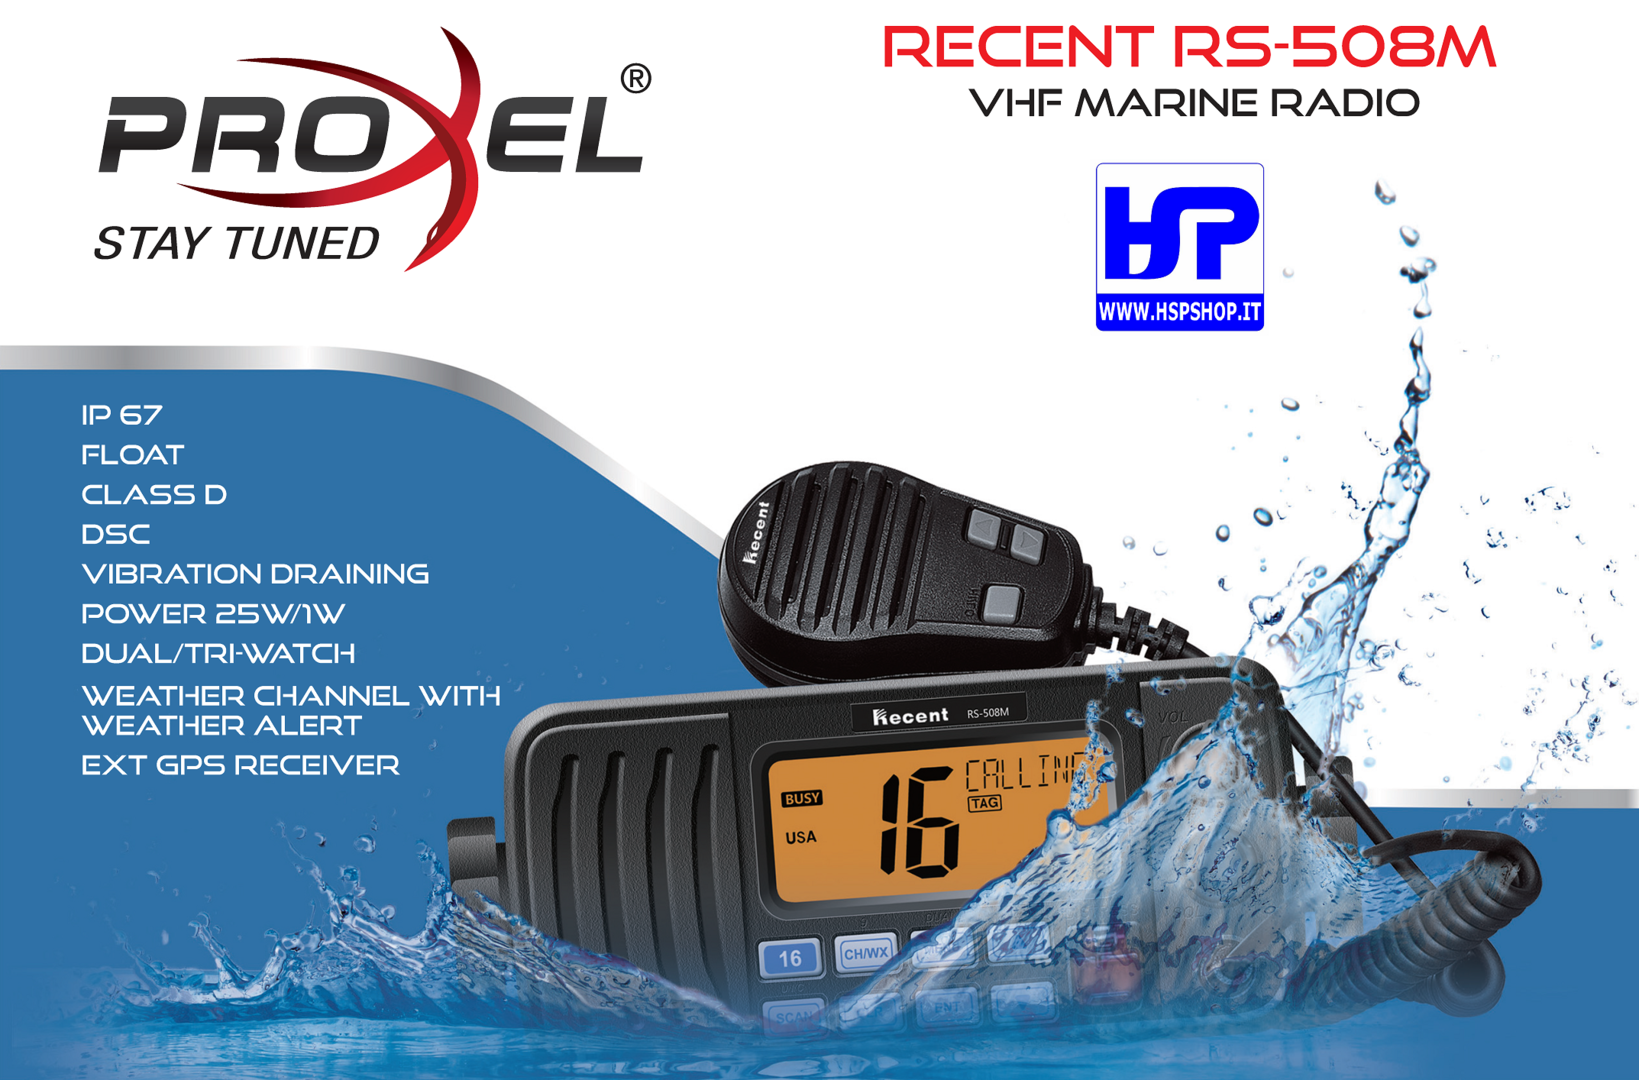 RECENT - RS508M - TRANSCEIVER NAUTICO VHF